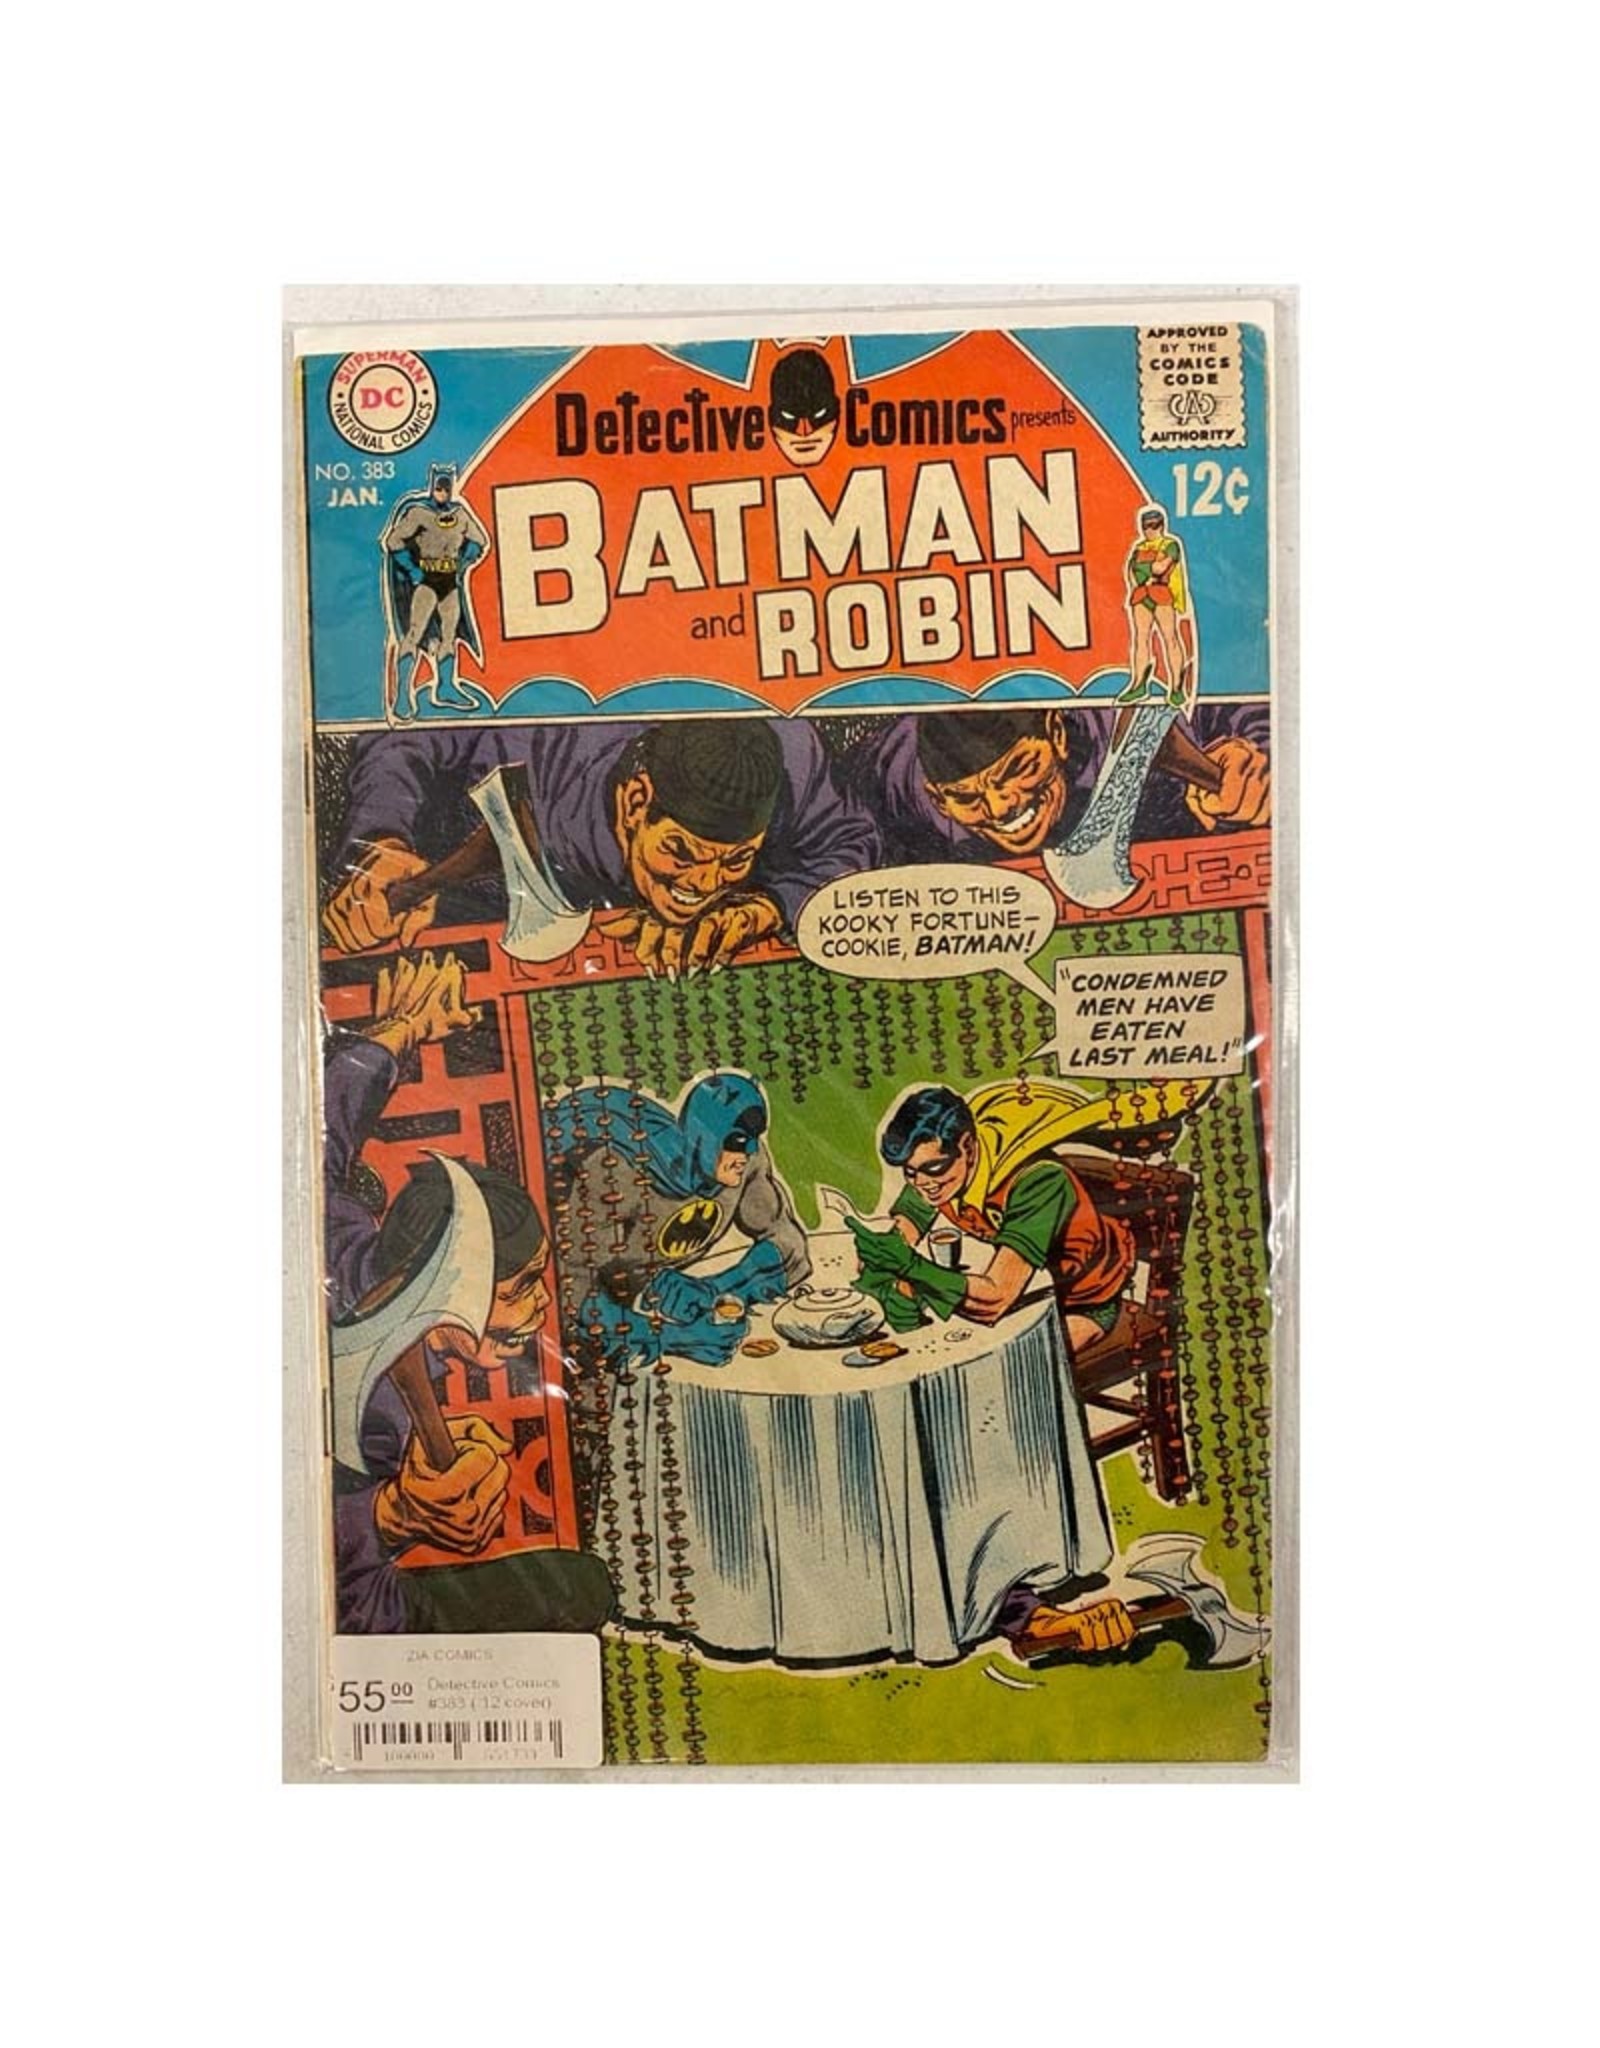 DC Comics Detective Comics #383 (.12 cover)